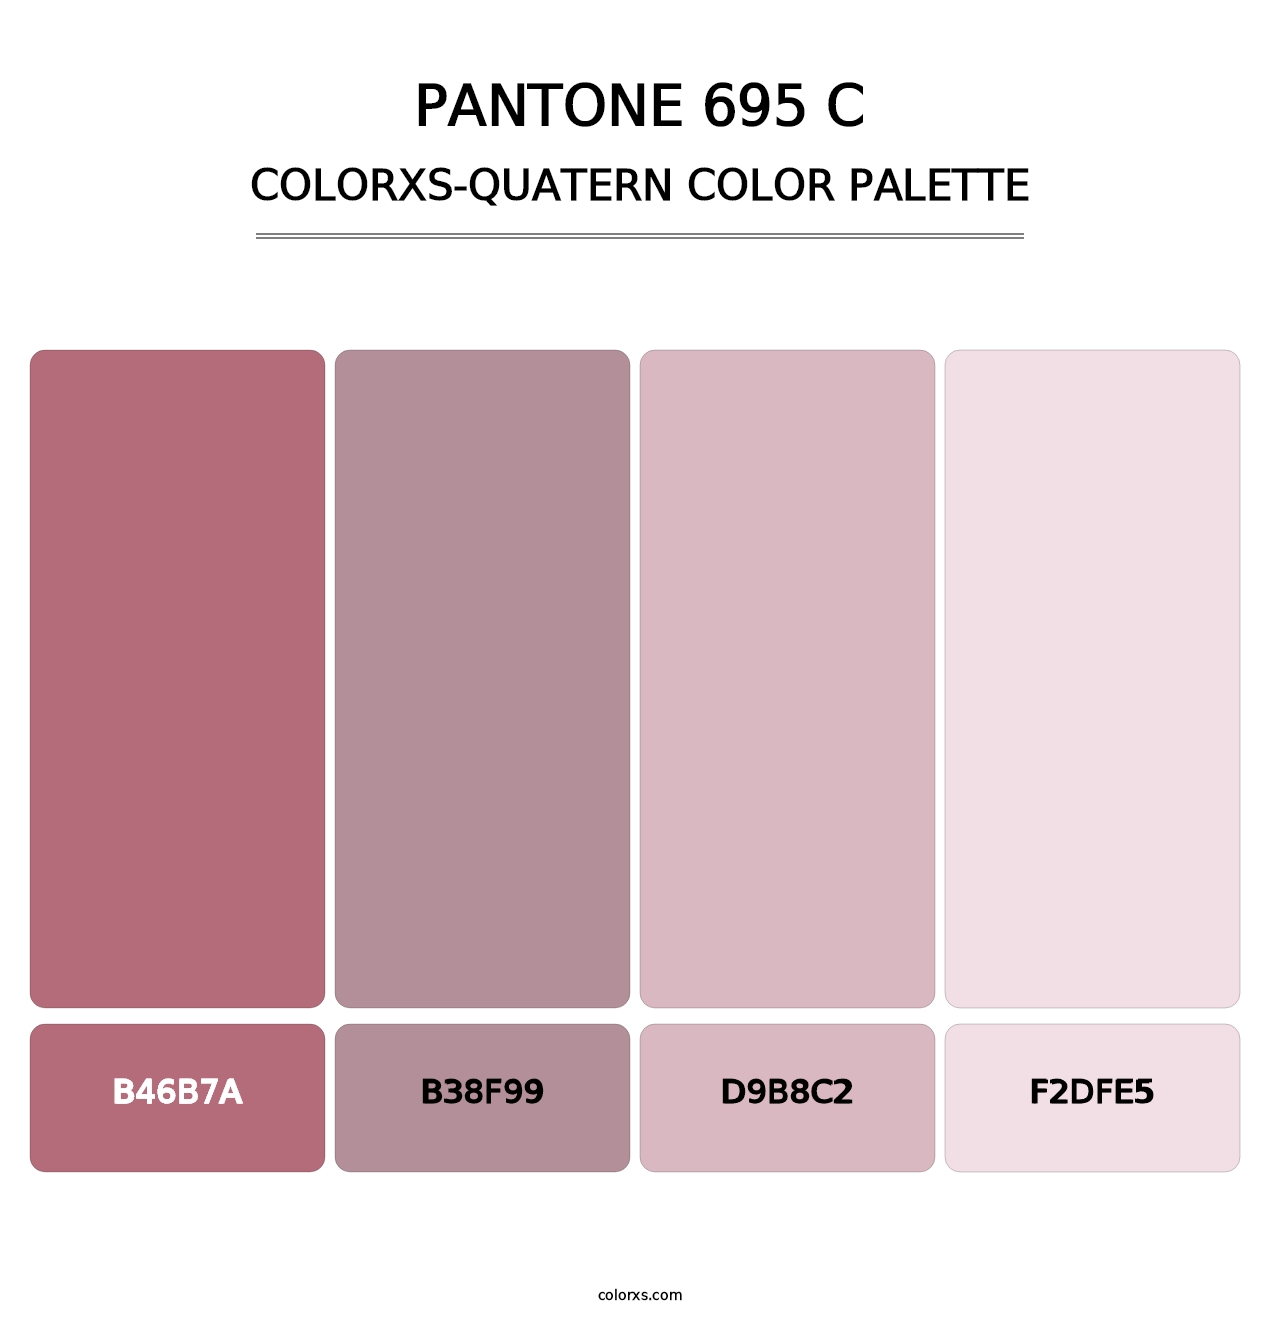 PANTONE 695 C - Colorxs Quatern Palette